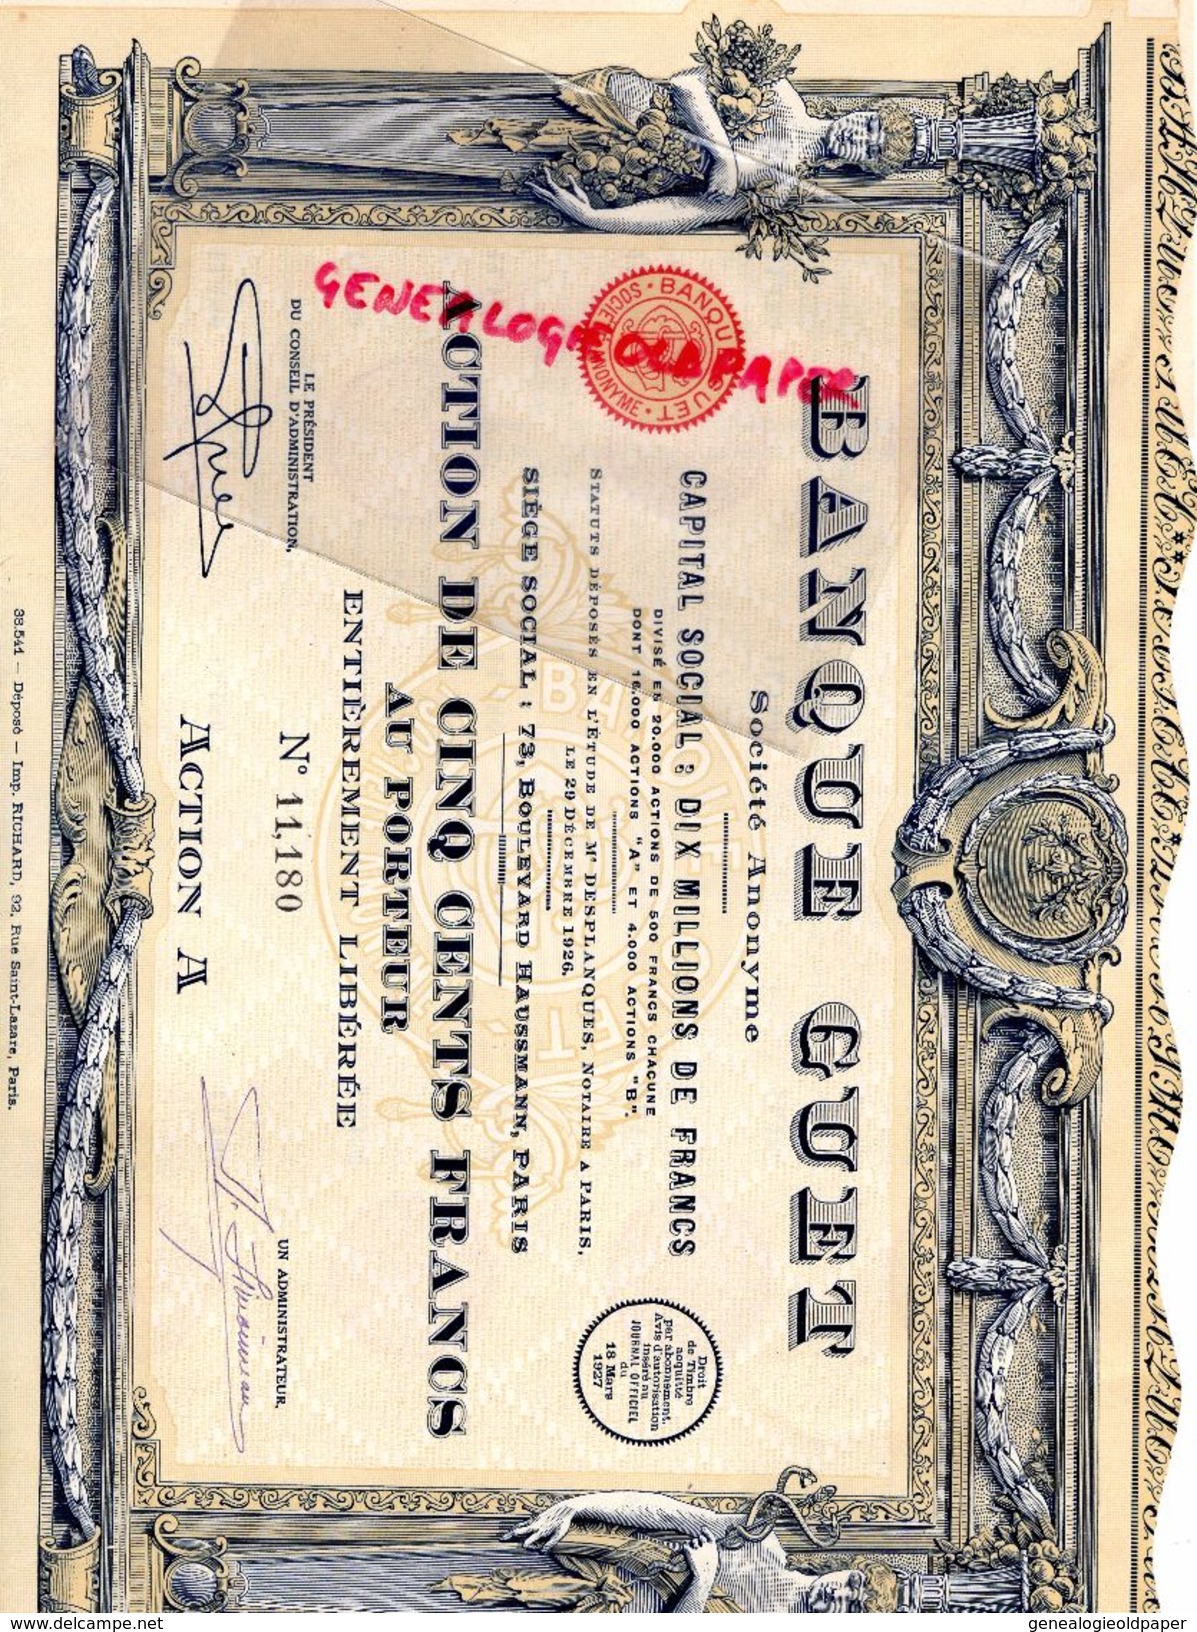 75 - PARIS- BANQUE GUET -ACTION 500 FRANCS- 1926- 73 BD HAUSSMANN- MAITRE DESPLANQUES NOTAIRE -IMPRIMERIE RICHARD - Bank & Insurance